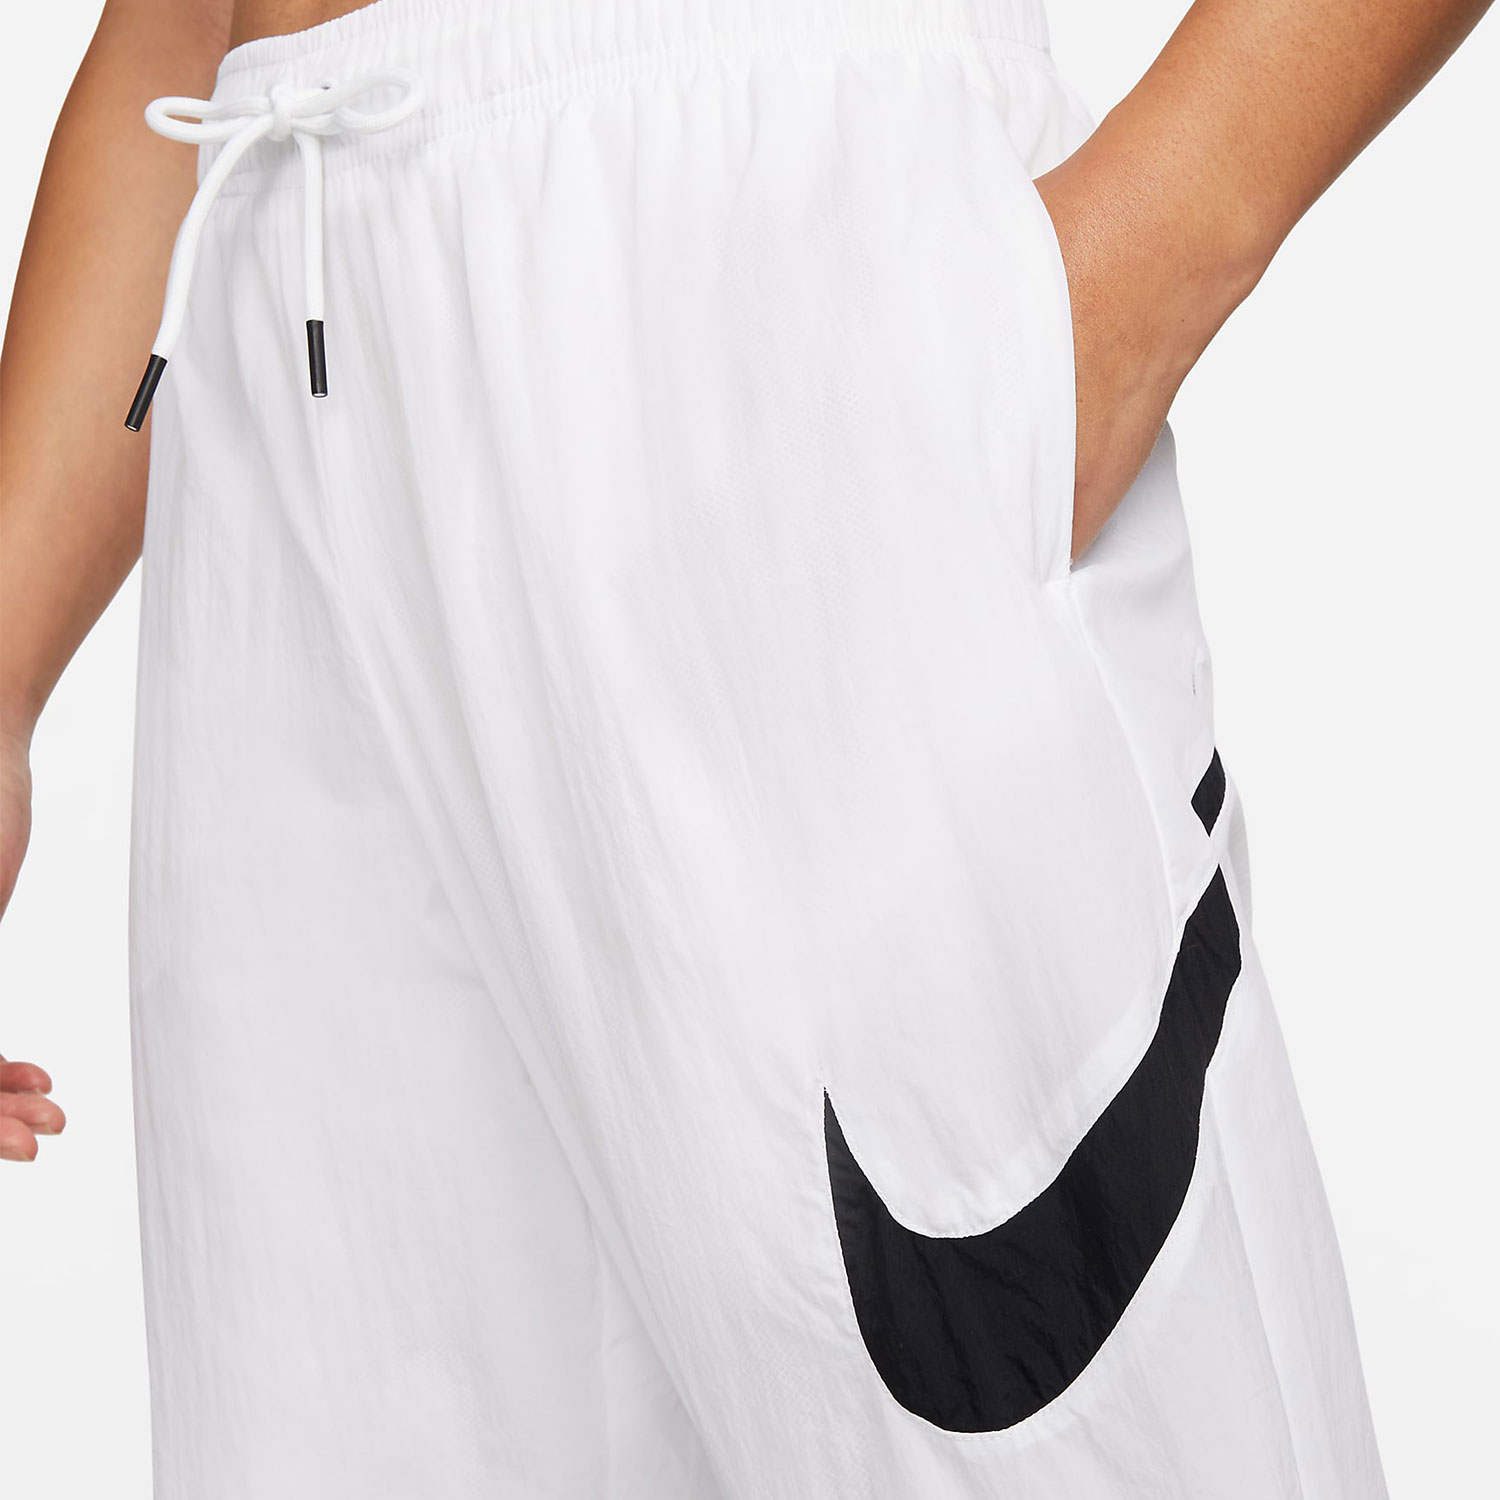 Nike耐克女裤子薄款梭织速干白色运动束脚小脚收口长裤DM6184-100